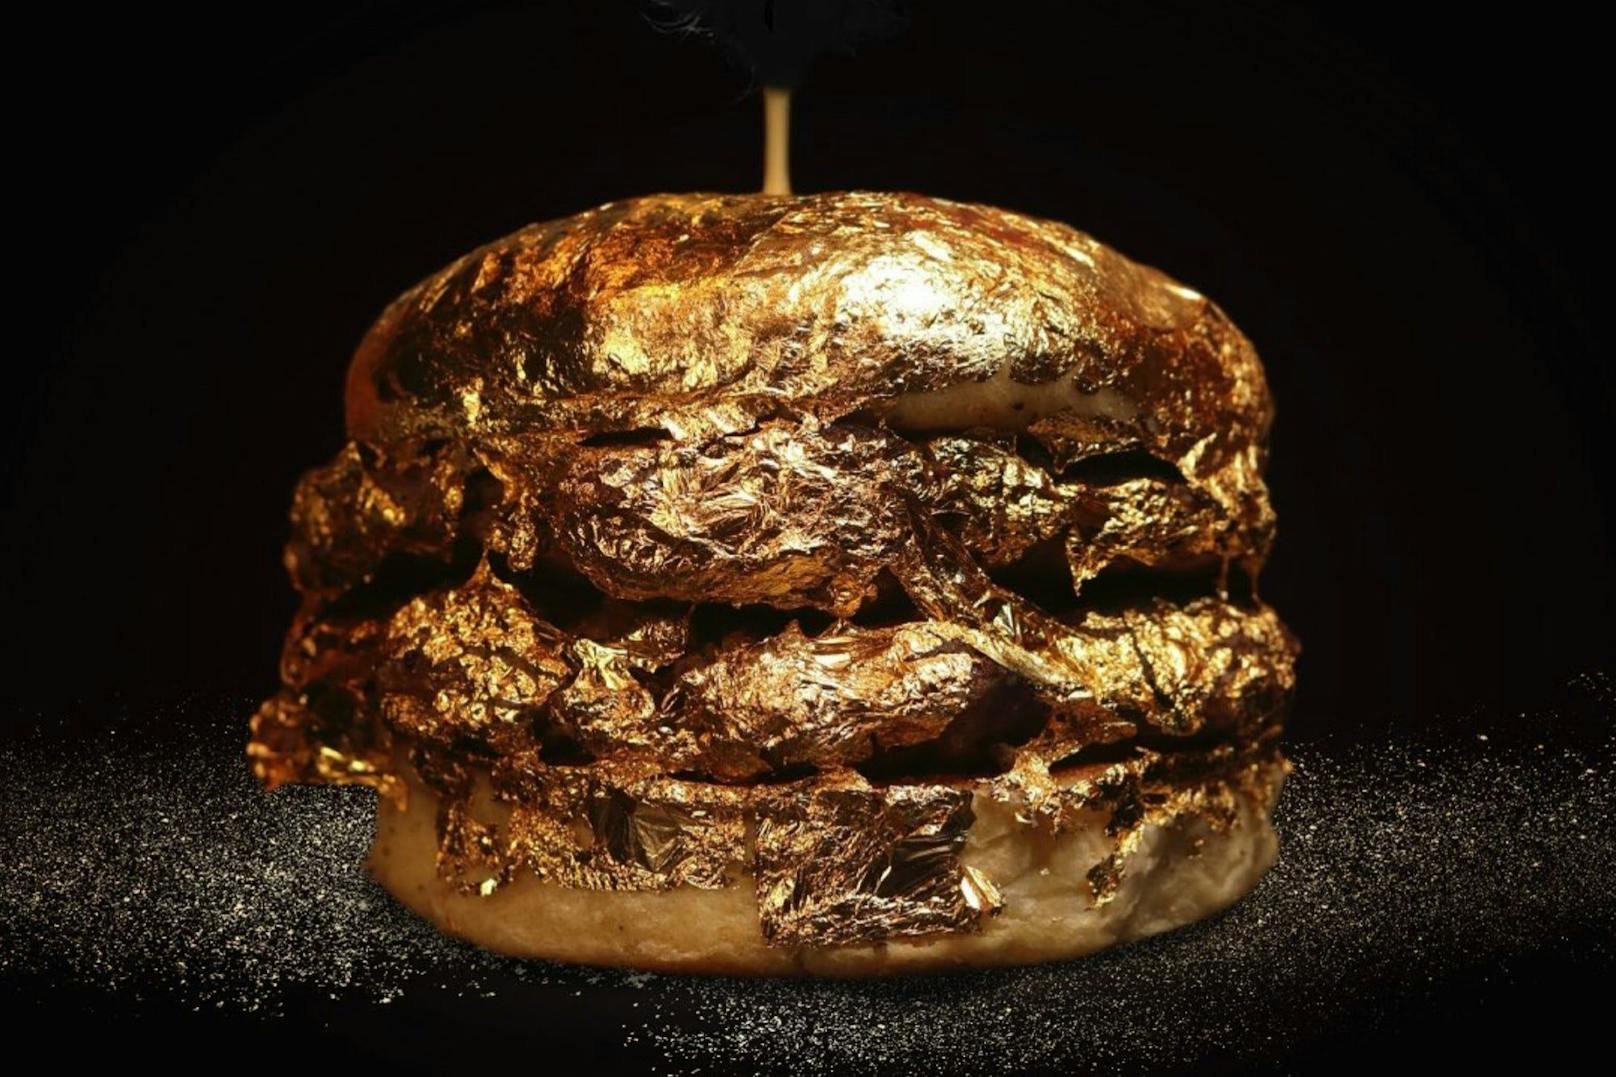 Diesen Goldburger gibt es derzeit bei einer kolumbianischen Fast-Food-Kette um rund 48 Euro.